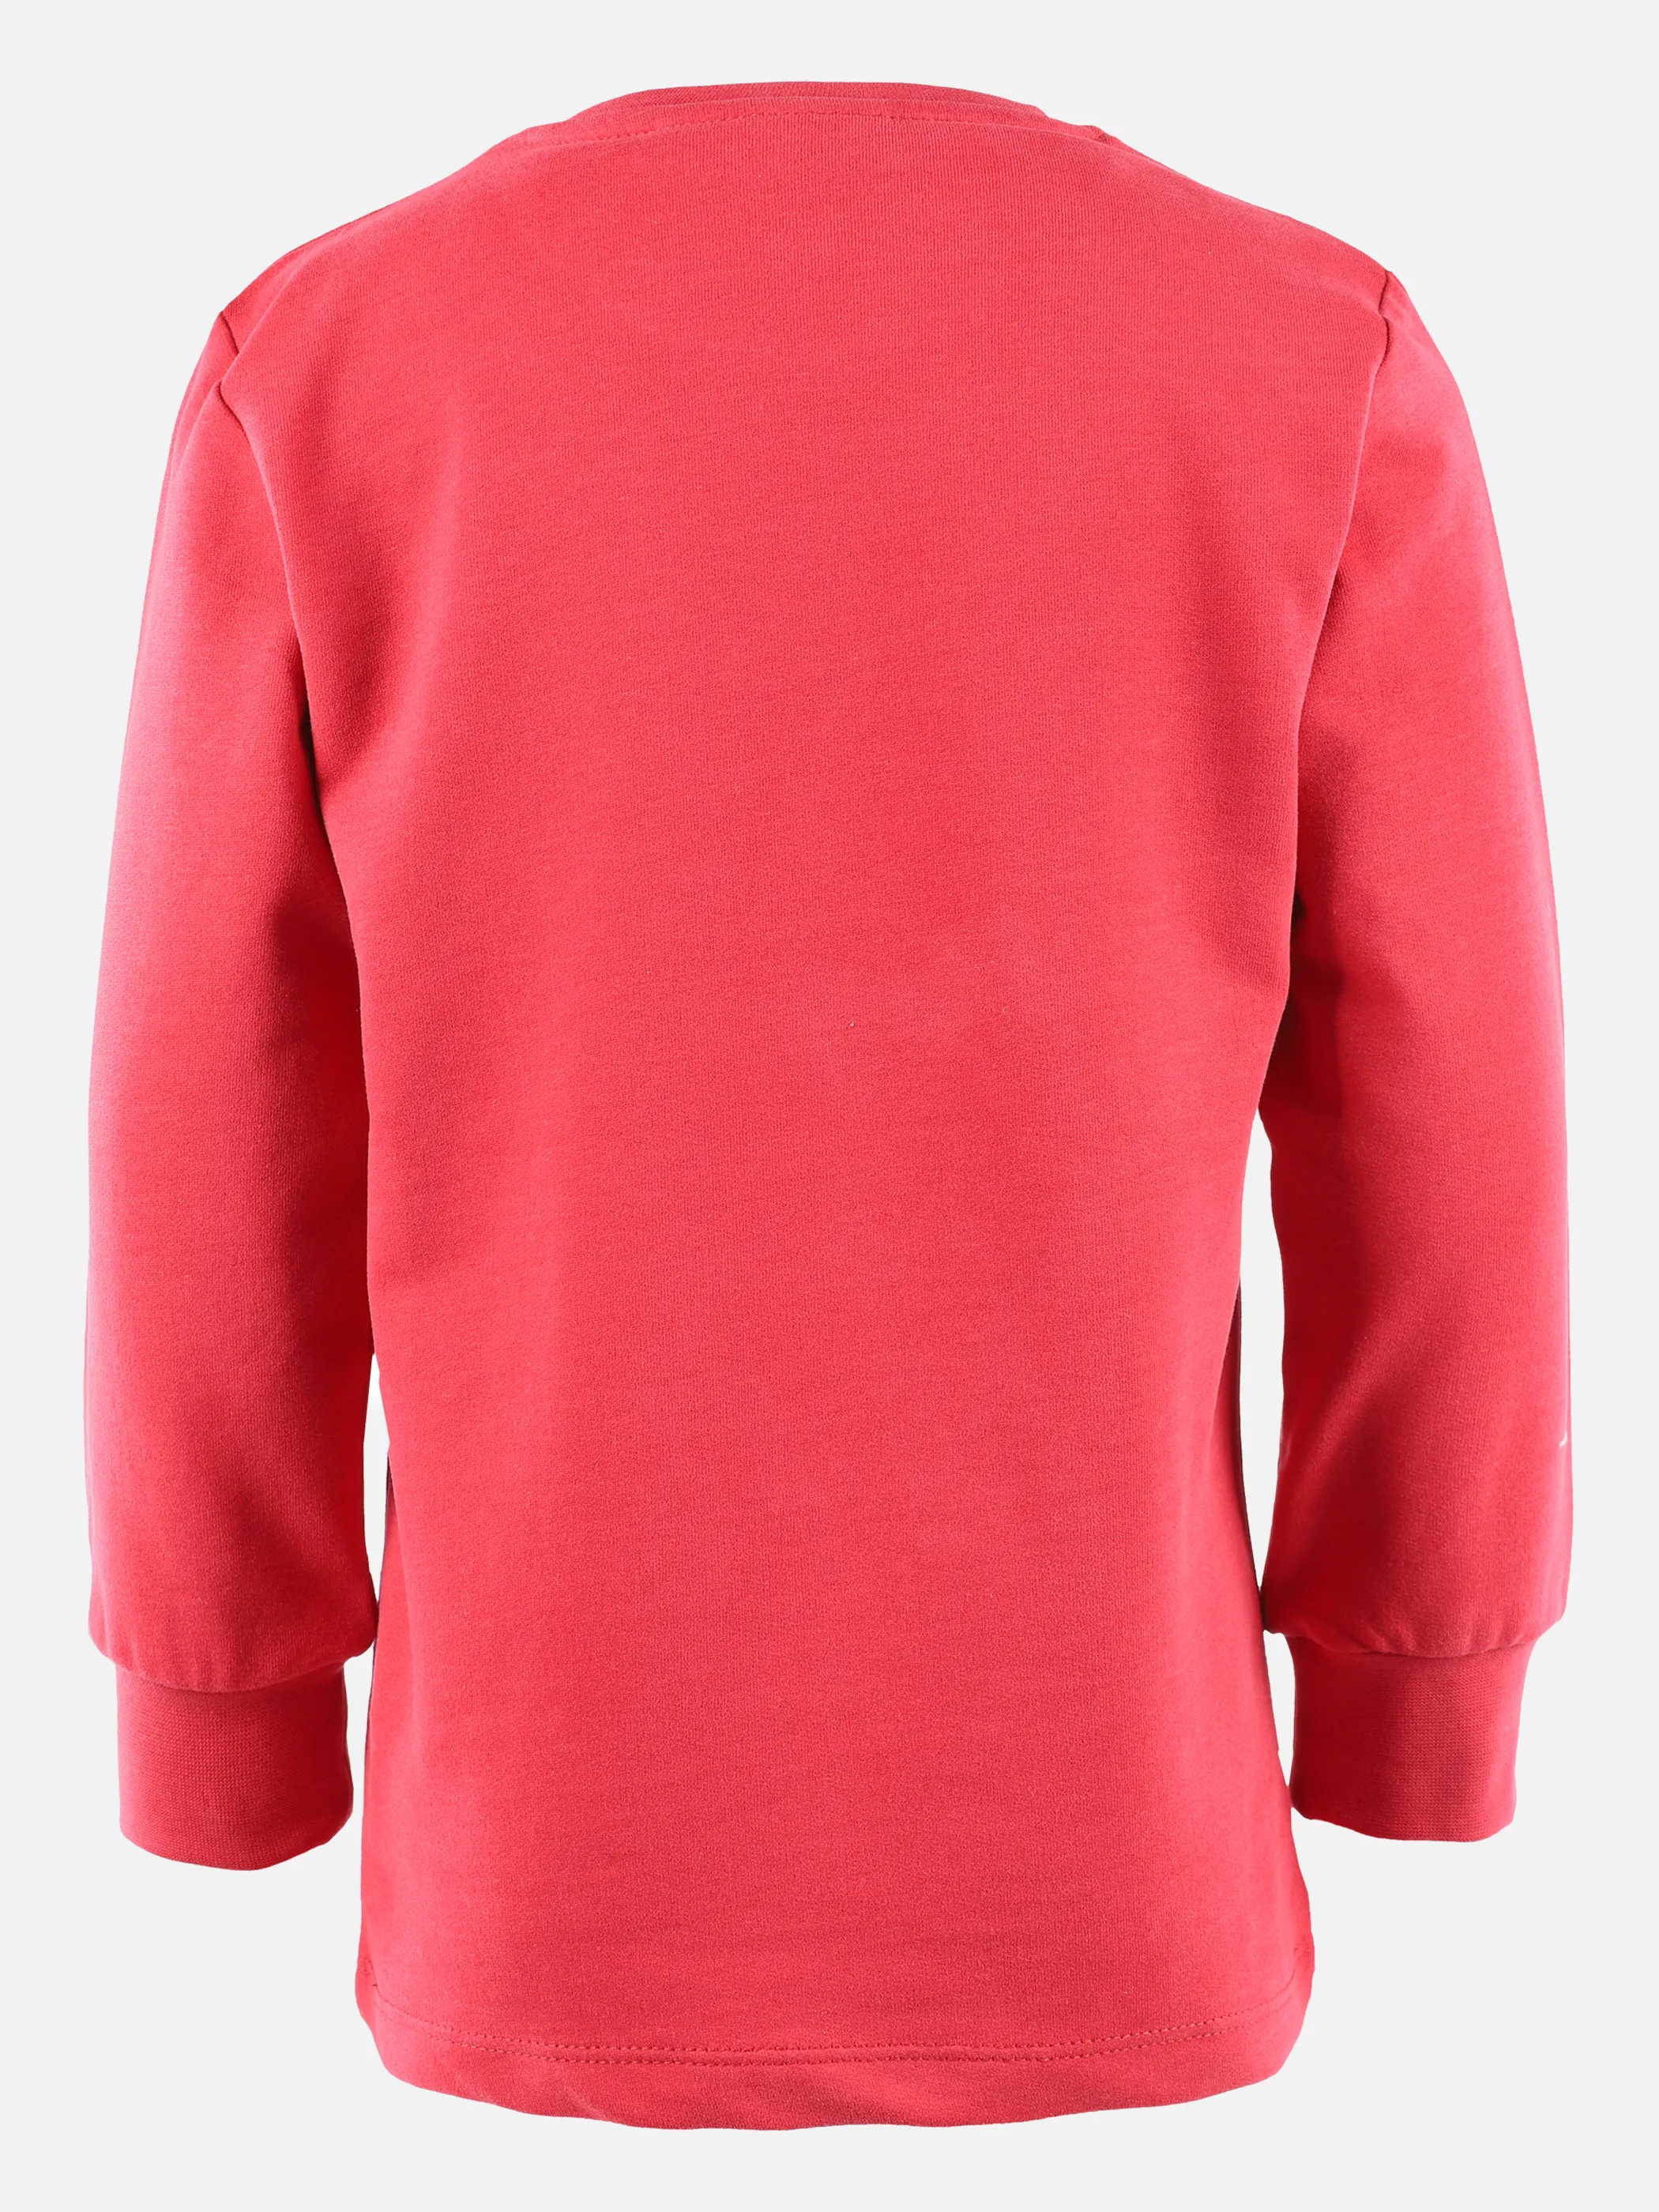 Stop + Go KM Sweatshirt in rot mit Pailletten Rot 875209 ROT 2